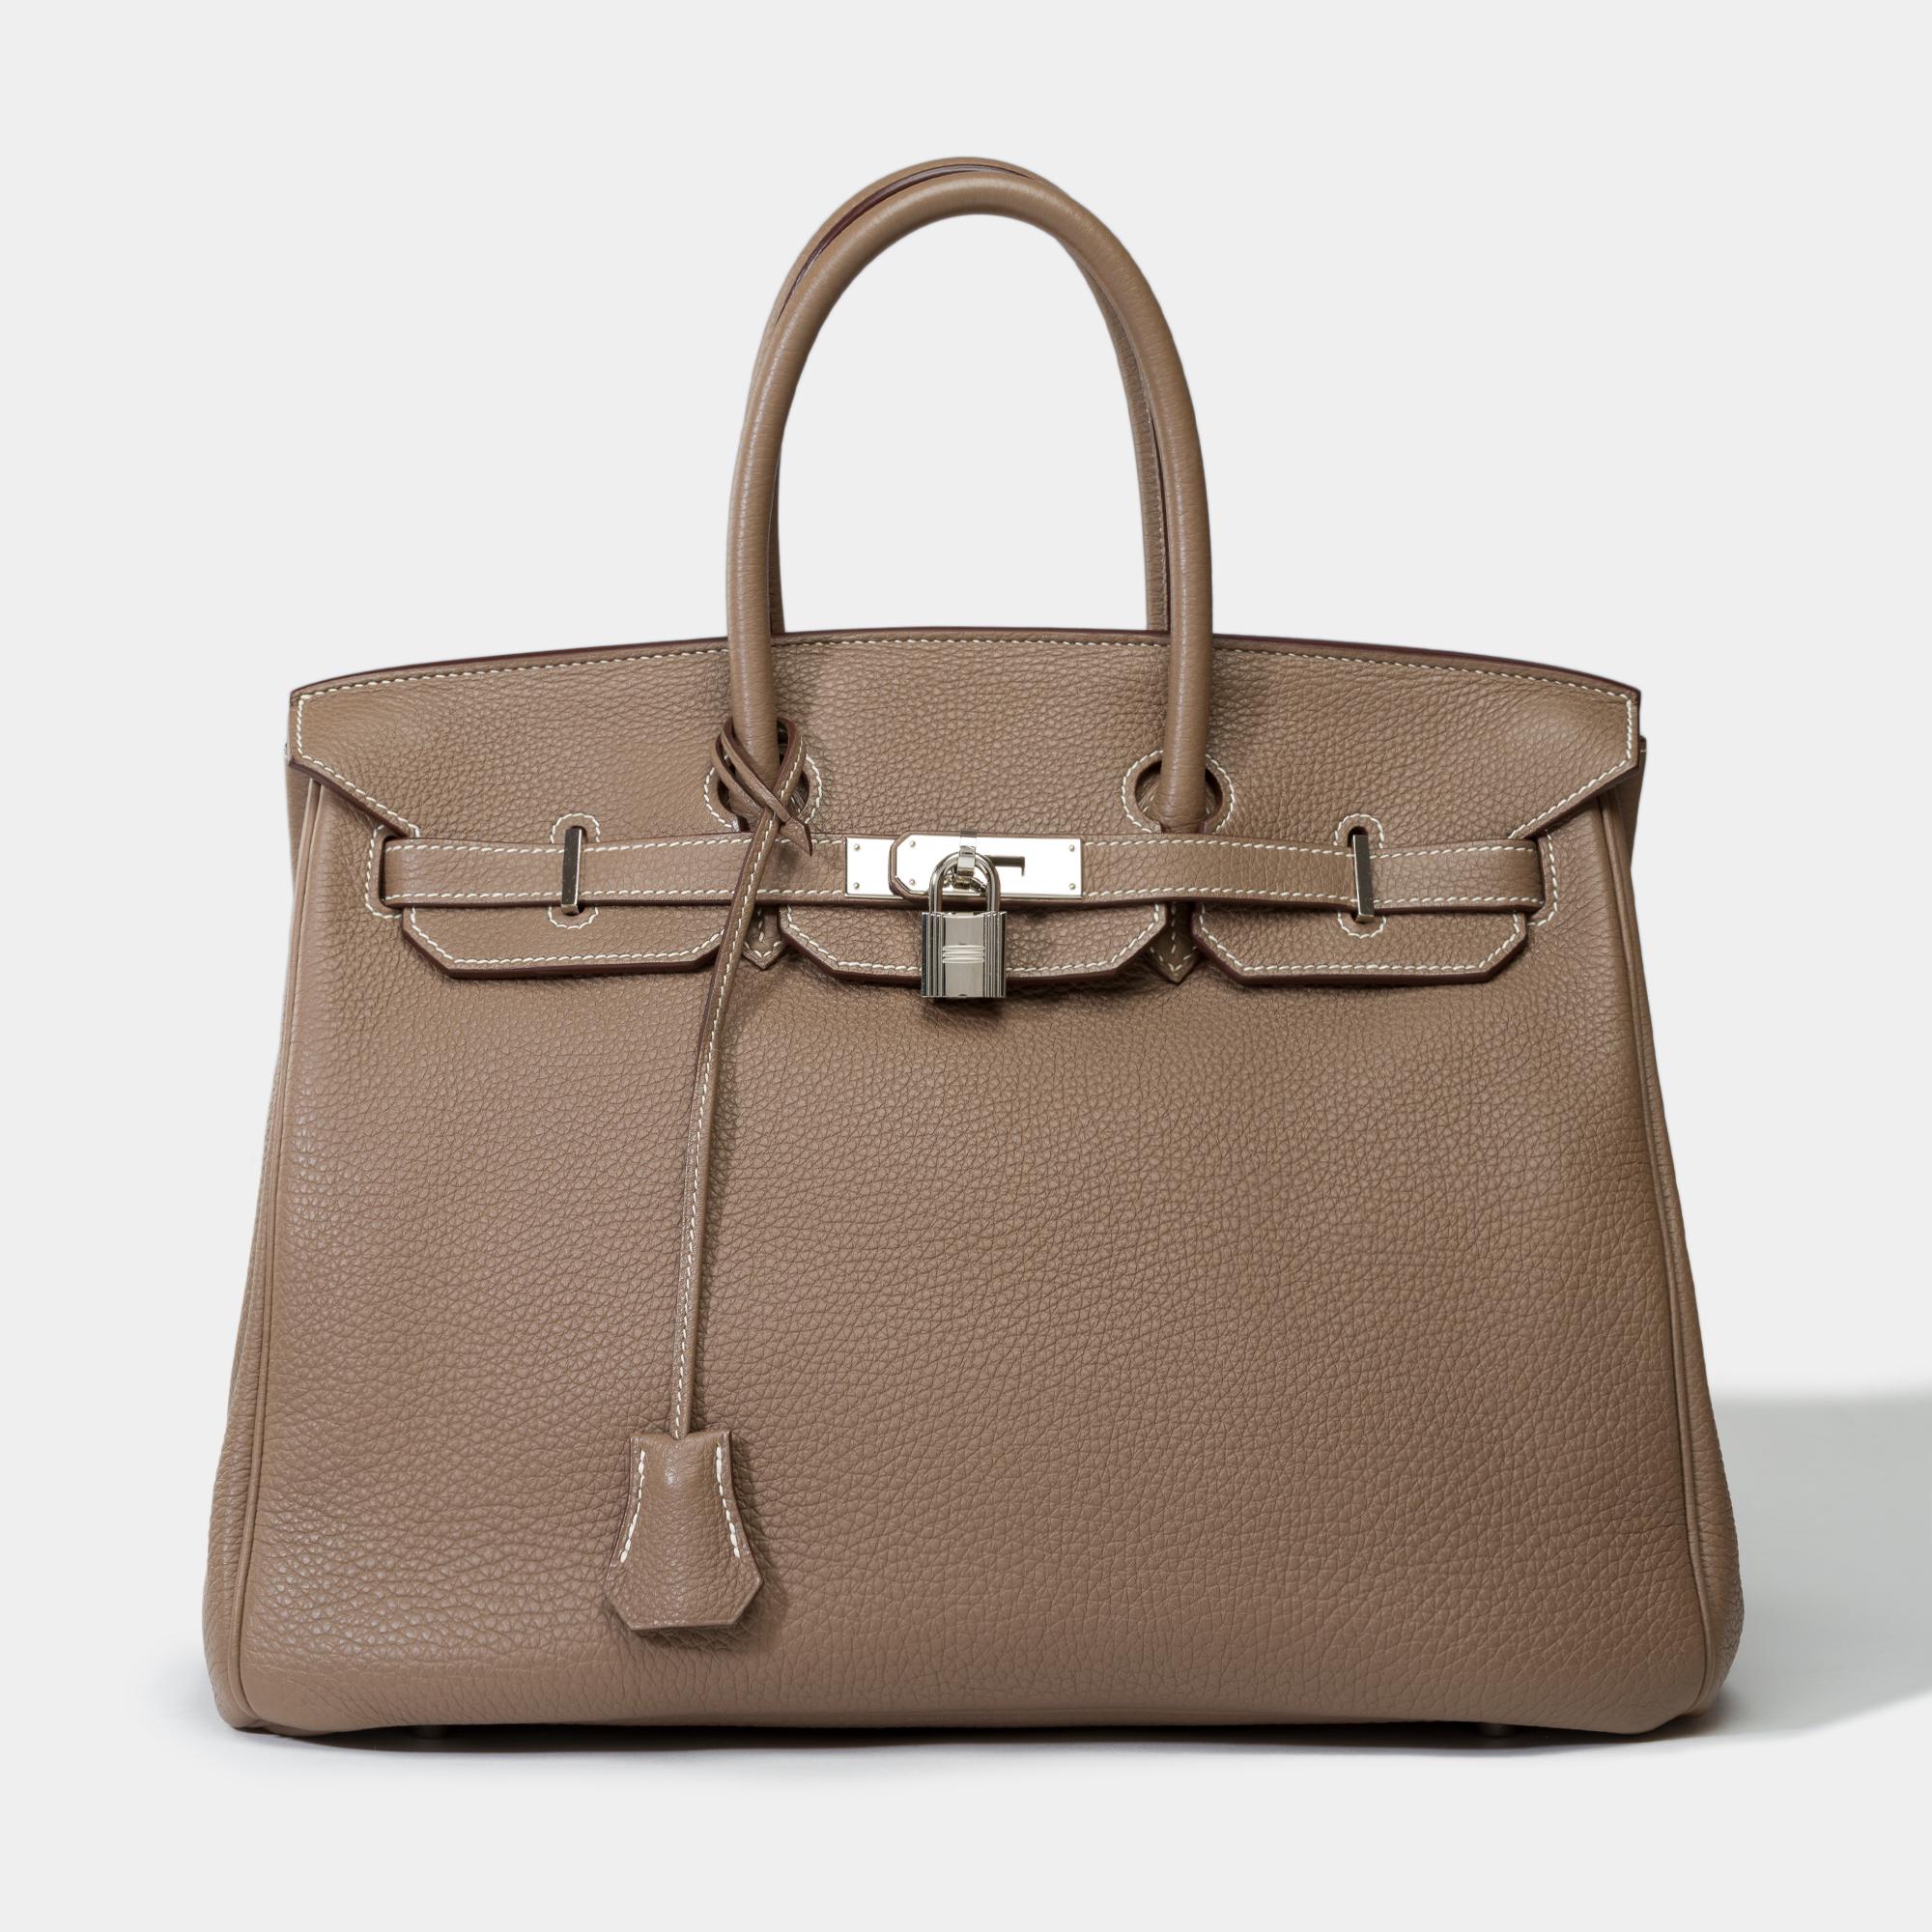 Stunning Hermès Birkin 35 handbag in etoupe Togo leather, SHW In Good Condition In Paris, IDF